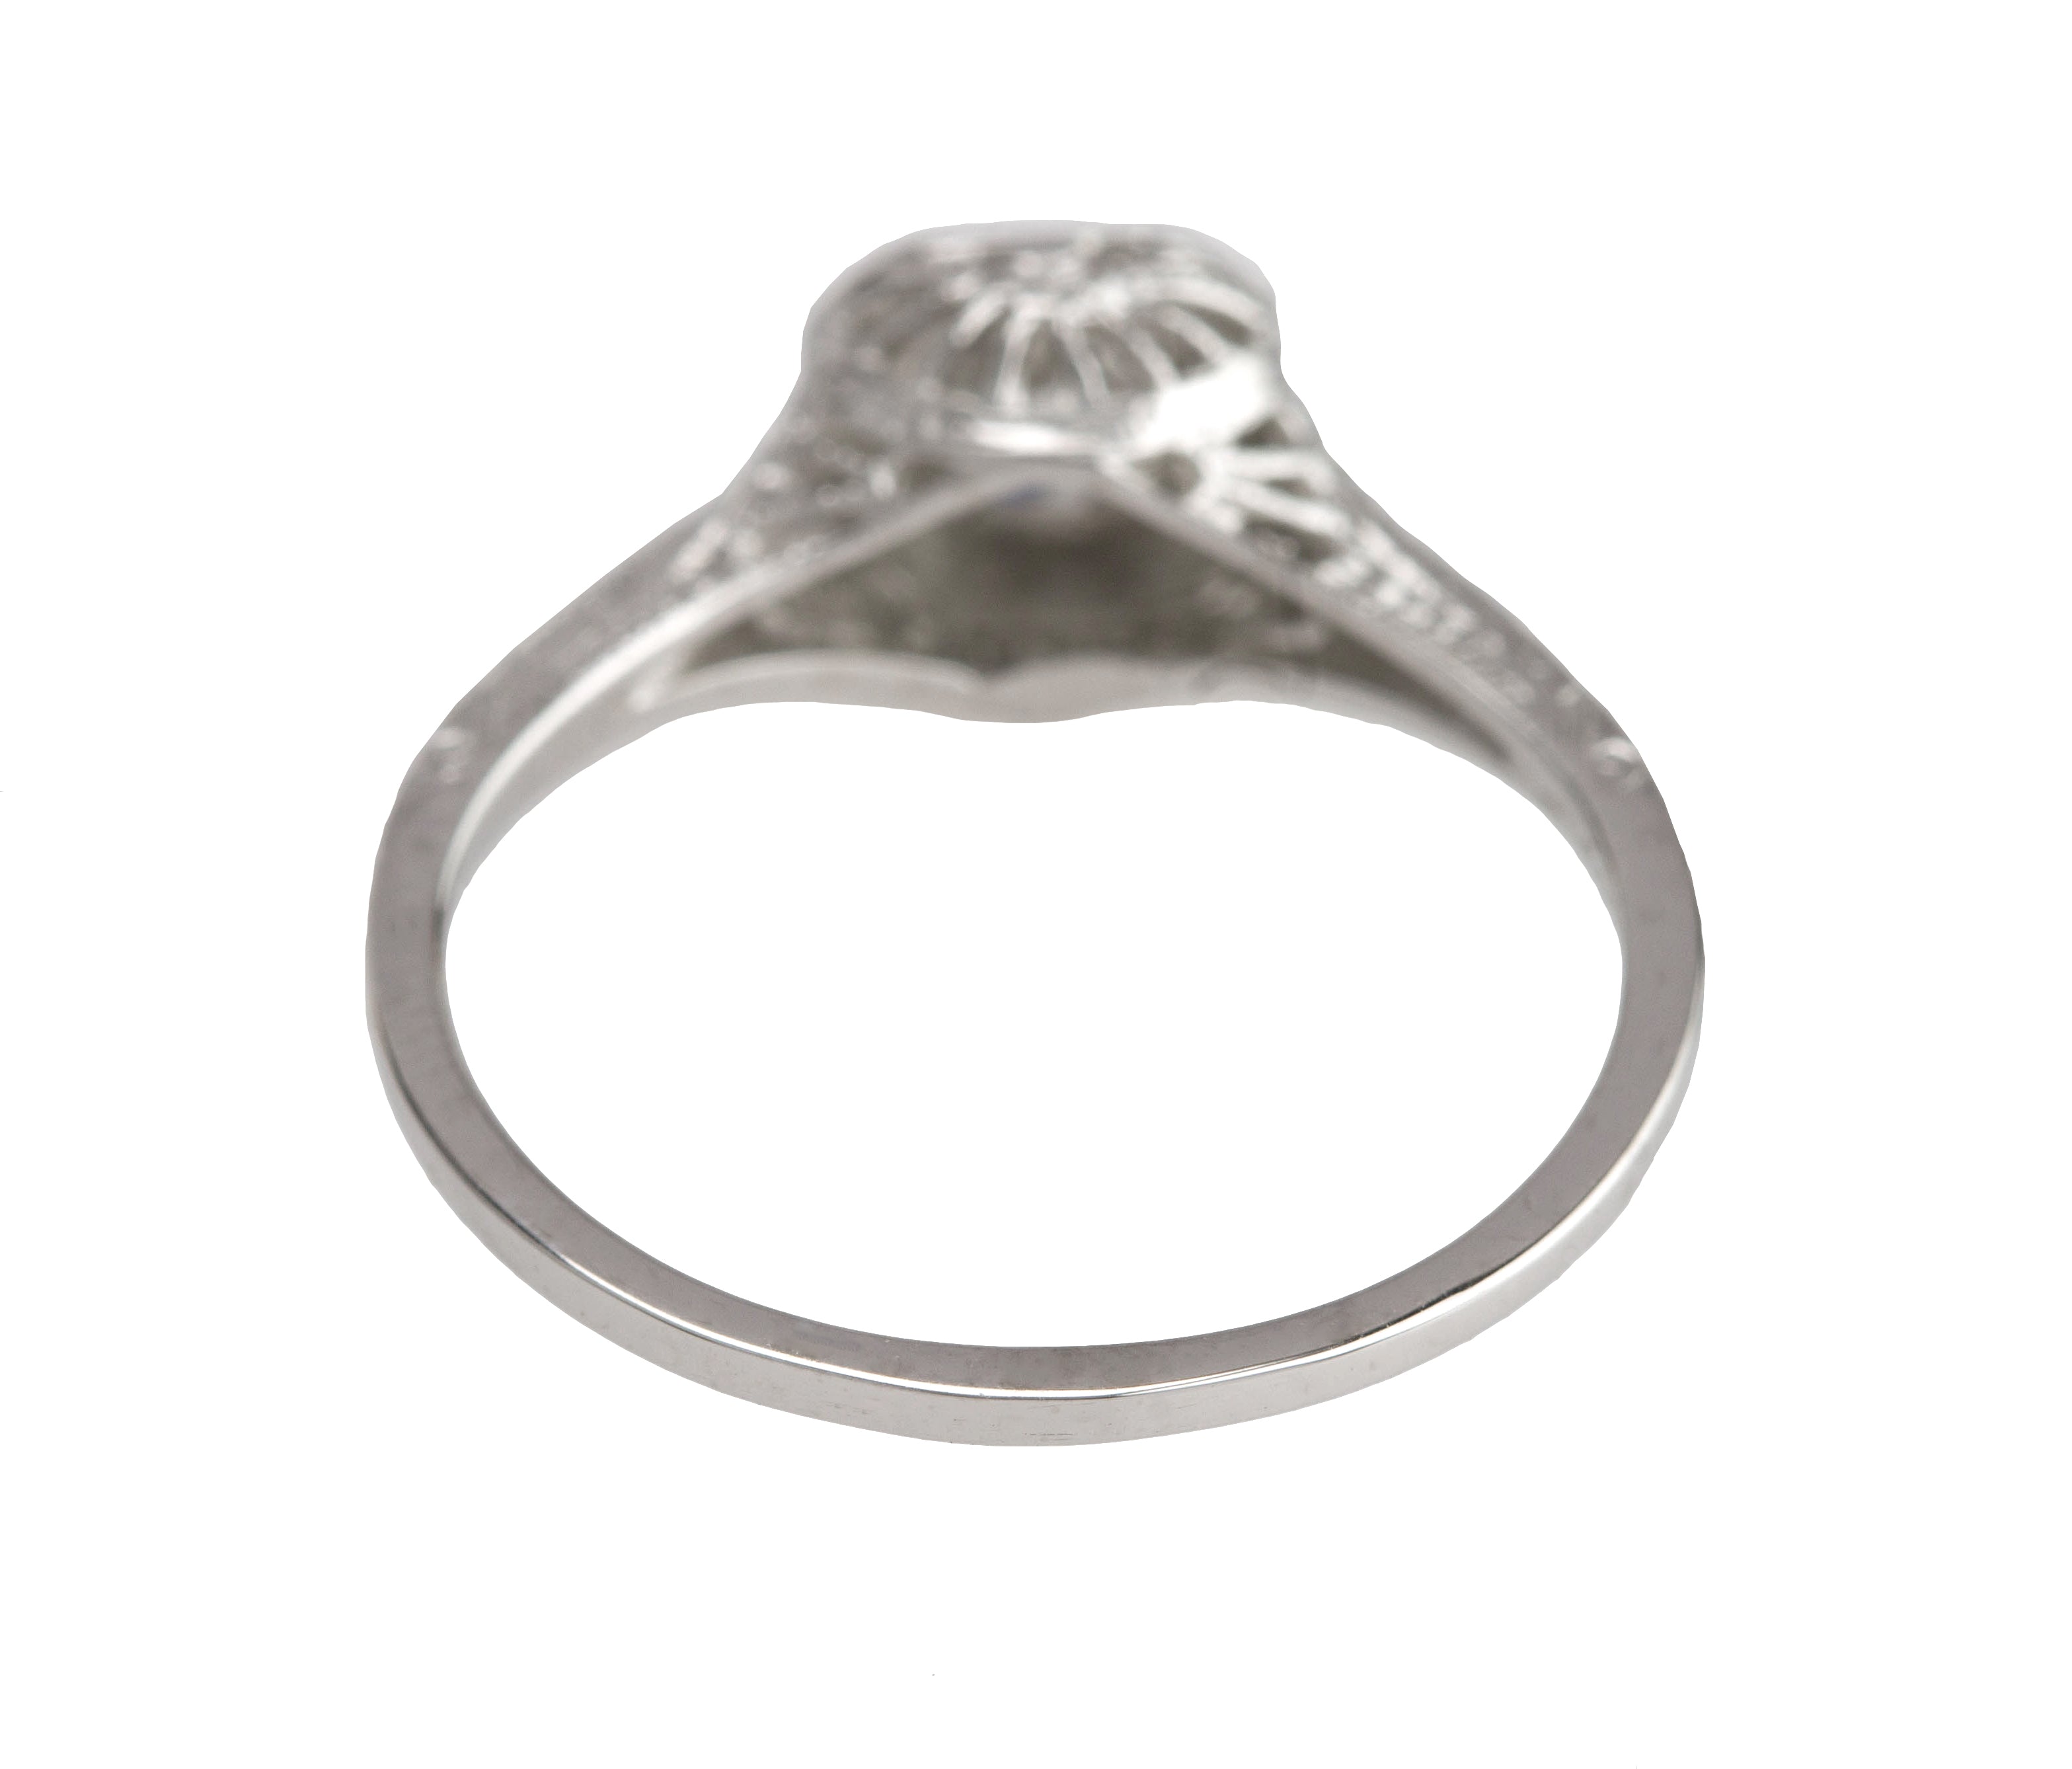 Antique Art Deco Platinum 0.37 CT Solitaire Diamond Filigree Engagement Ring